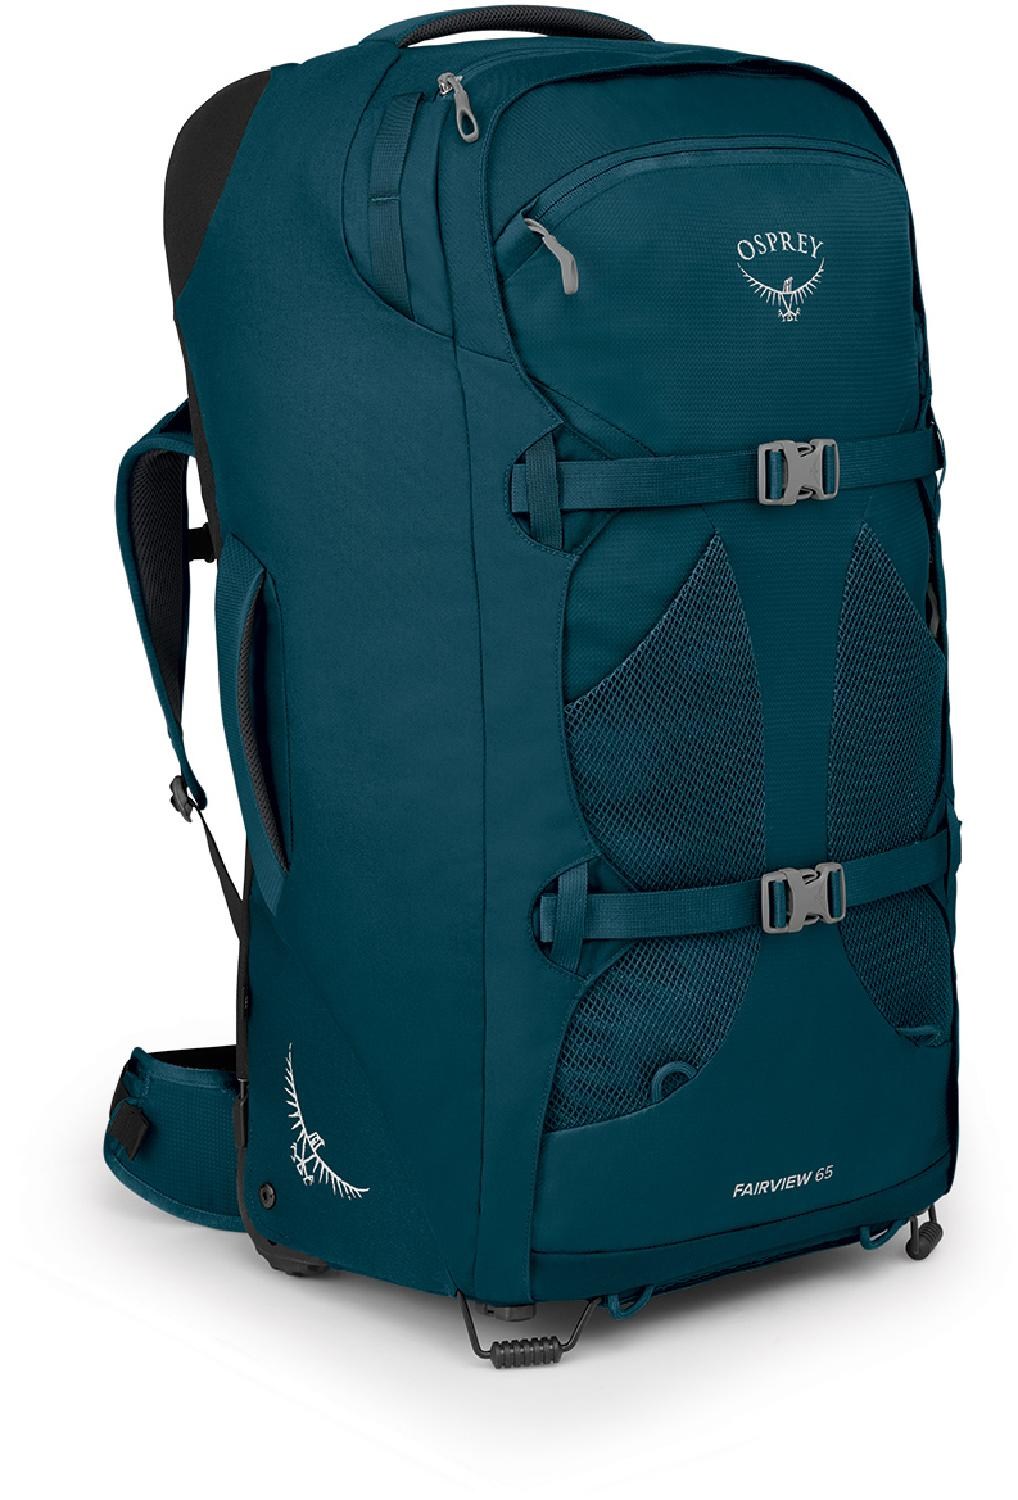 Дорожный рюкзак Fairview 65 на колесиках — женский Osprey, синий